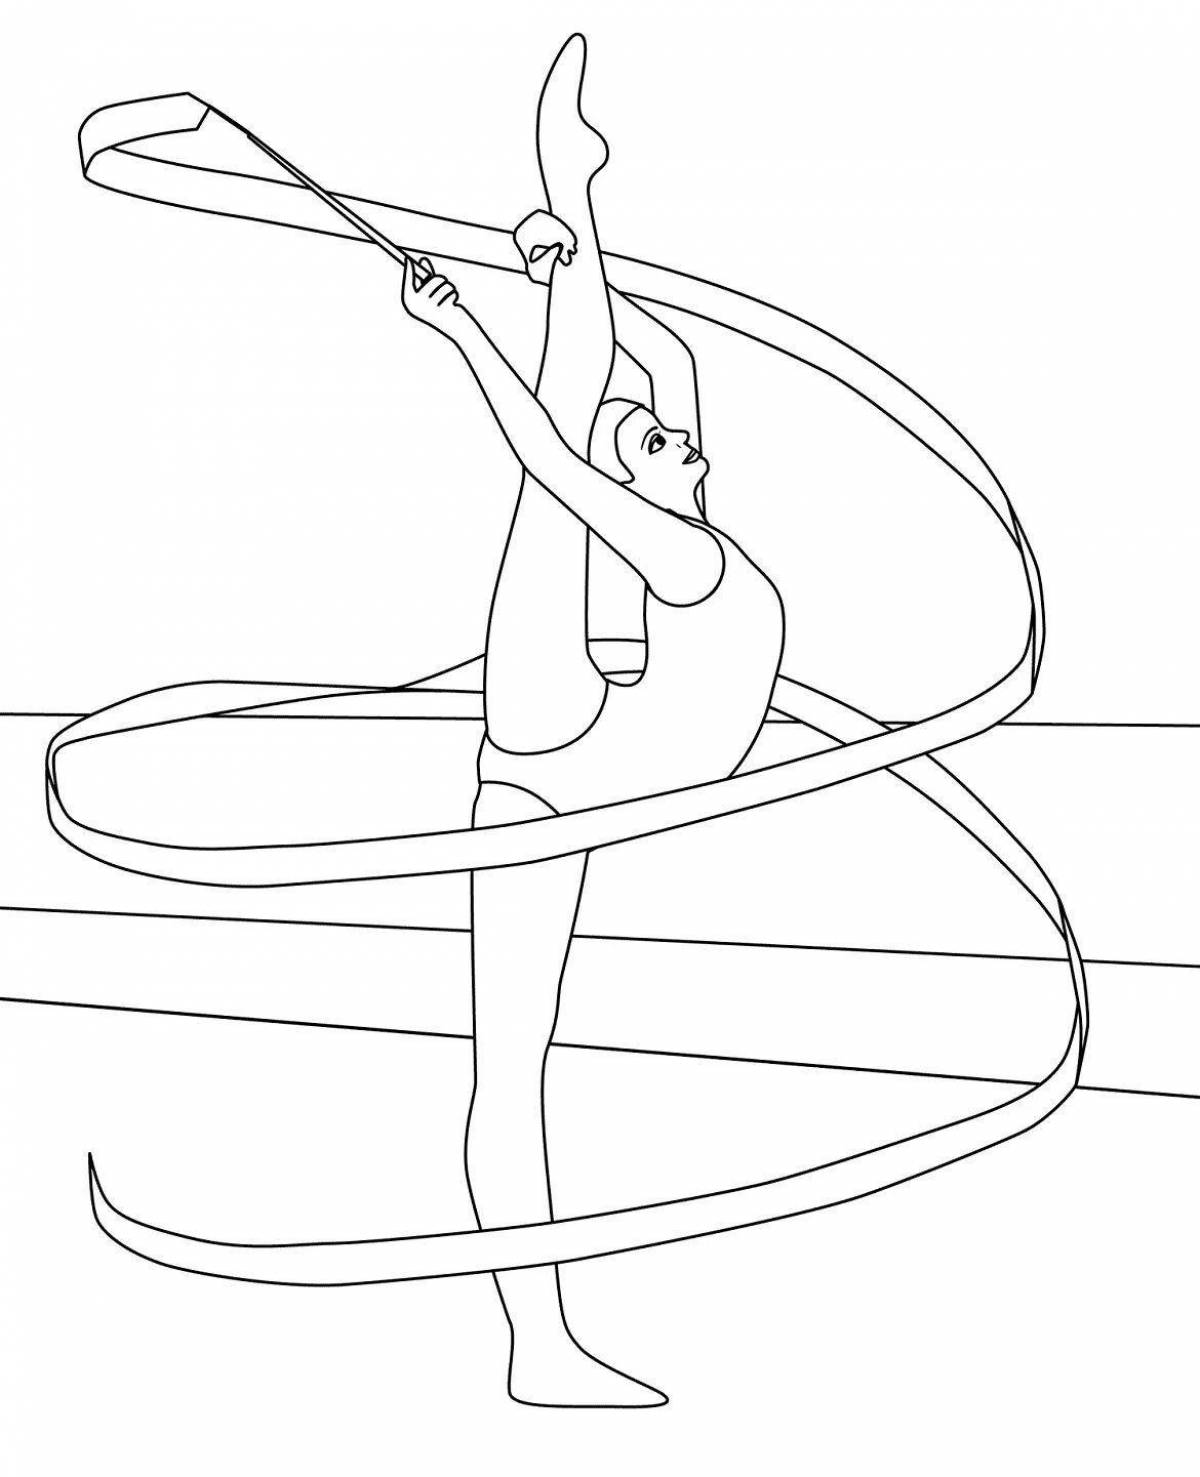 Акробатическая гимнастка с обручем